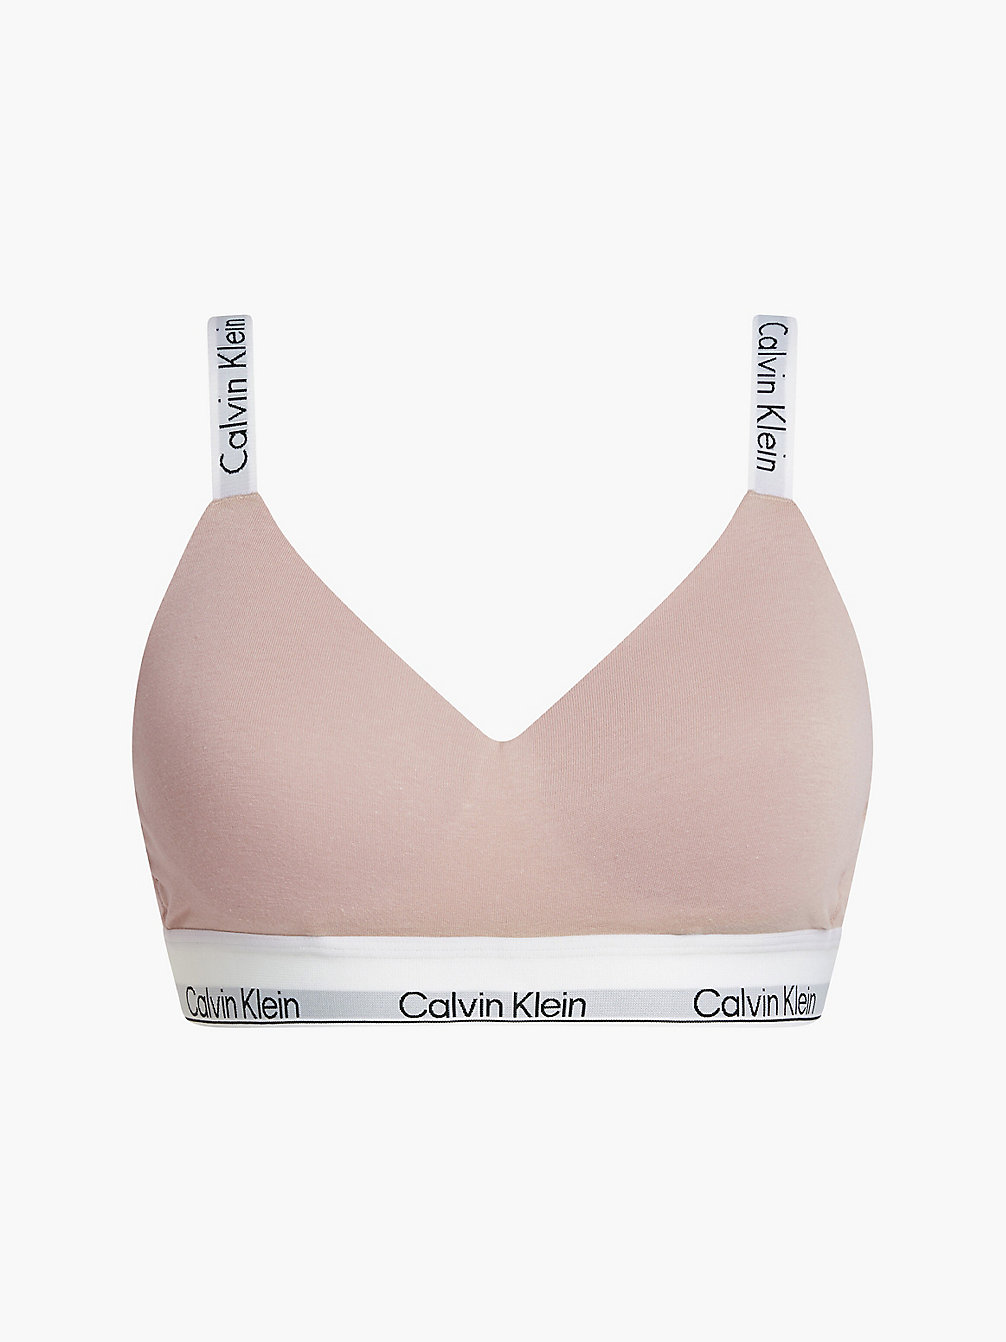 CEDAR Bralette – Modern Cotton undefined Damen Calvin Klein